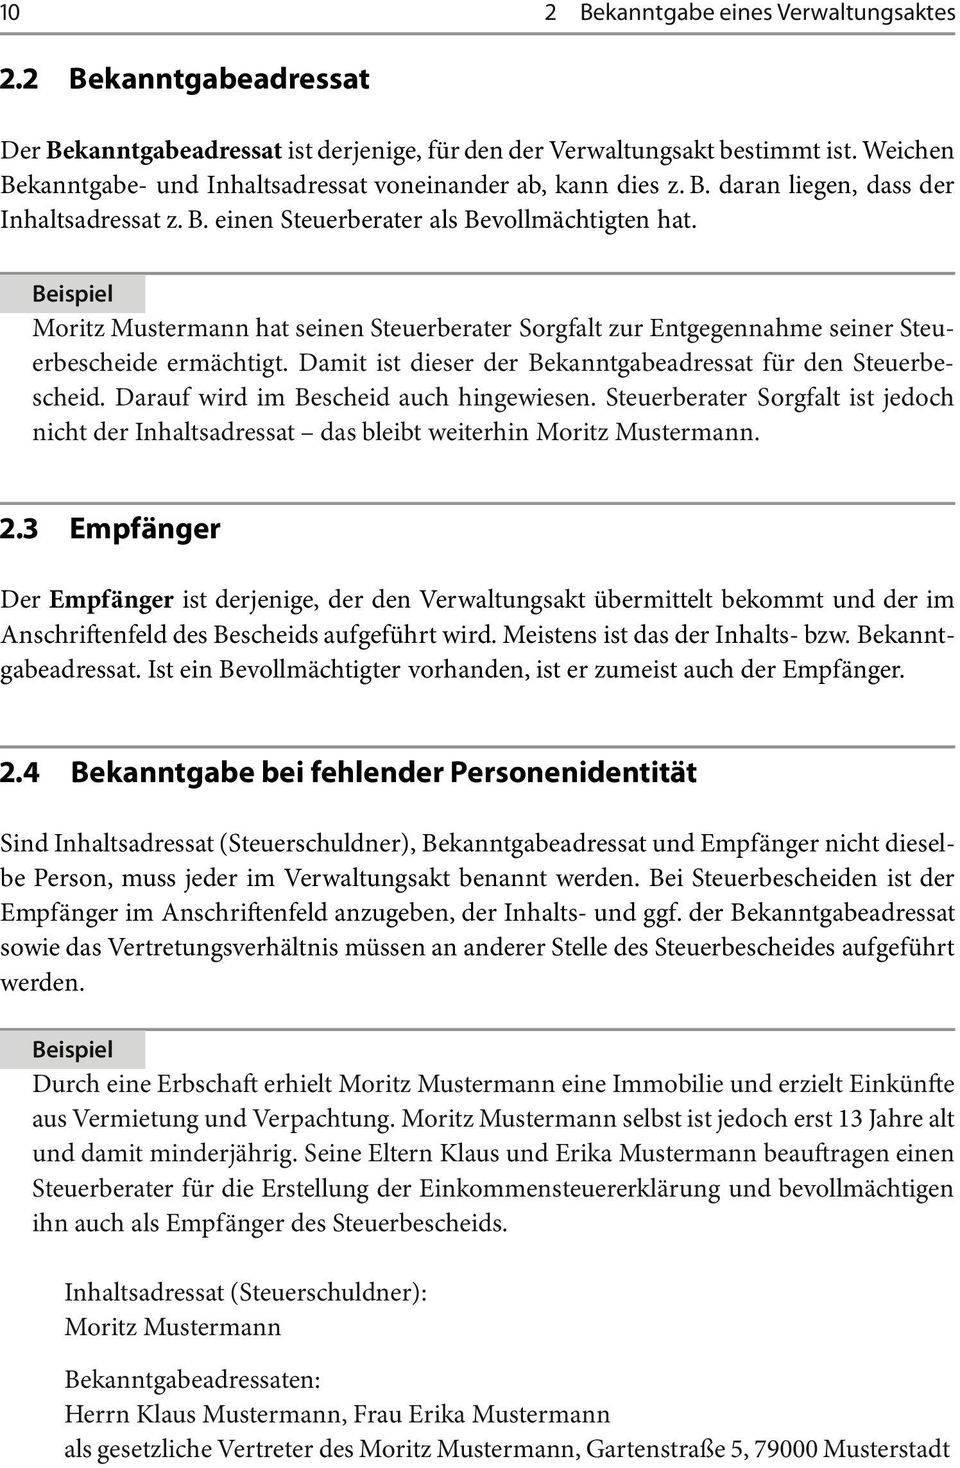 Moritz Mustermann hat seinen Steuerberater Sorgfalt zur Entgegennahme seiner Steuerbescheide ermächtigt. Damit ist dieser der Bekanntgabeadressat für den Steuerbescheid.